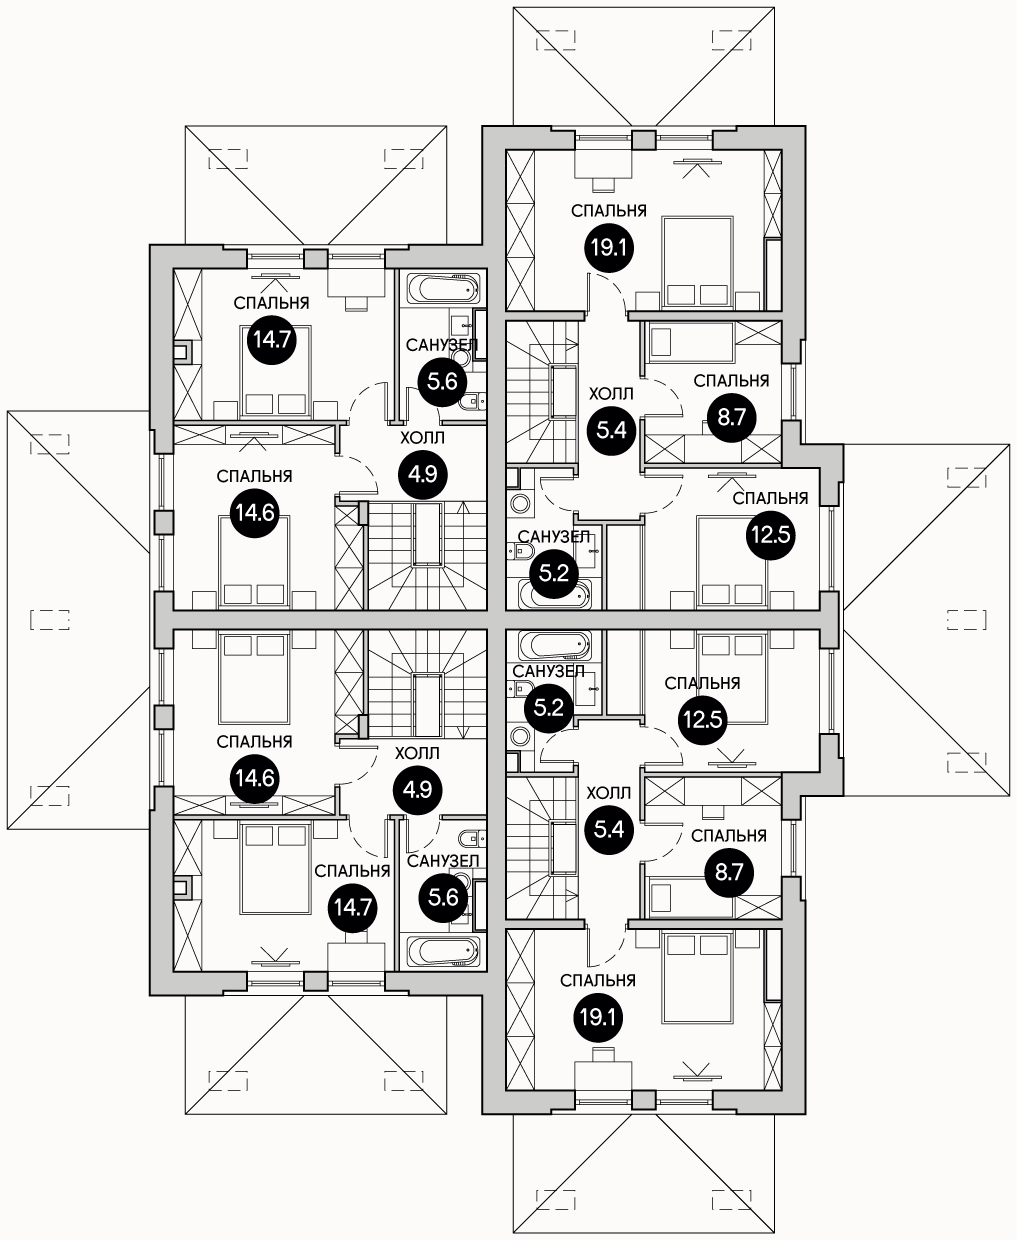 Планирока 2-го этажа в проекте Квадрохаус на 4 семьи KB-85/105